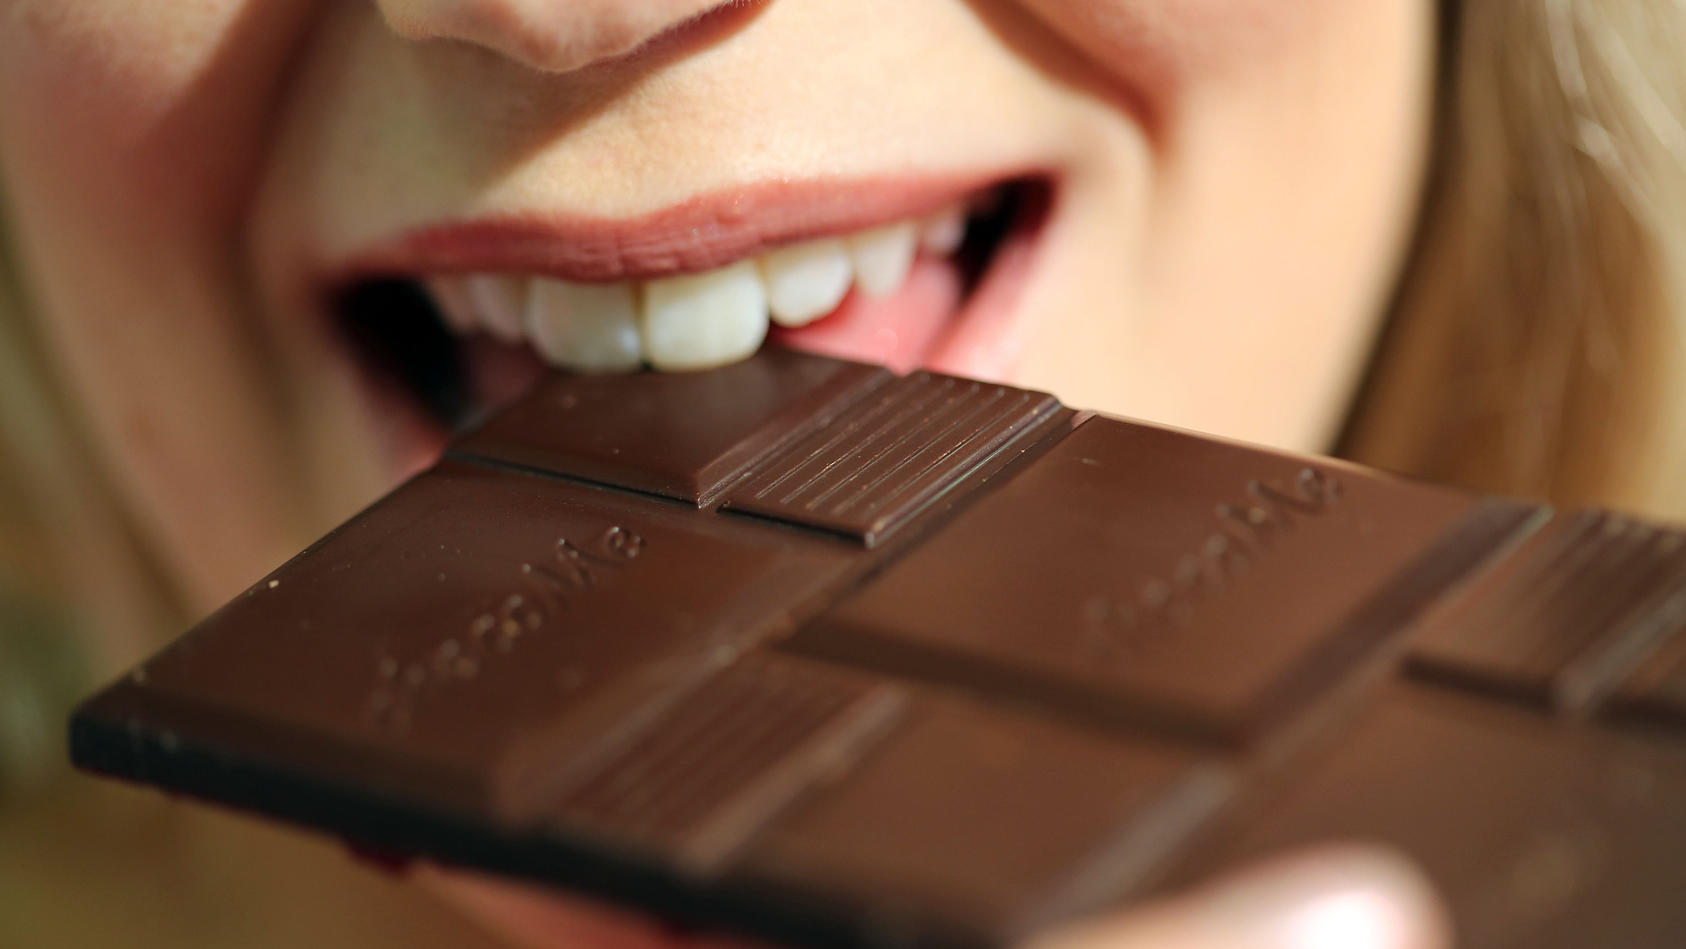 Schokolade schmeckt lecker, aber sind es die vielen Kalorien immer wert?